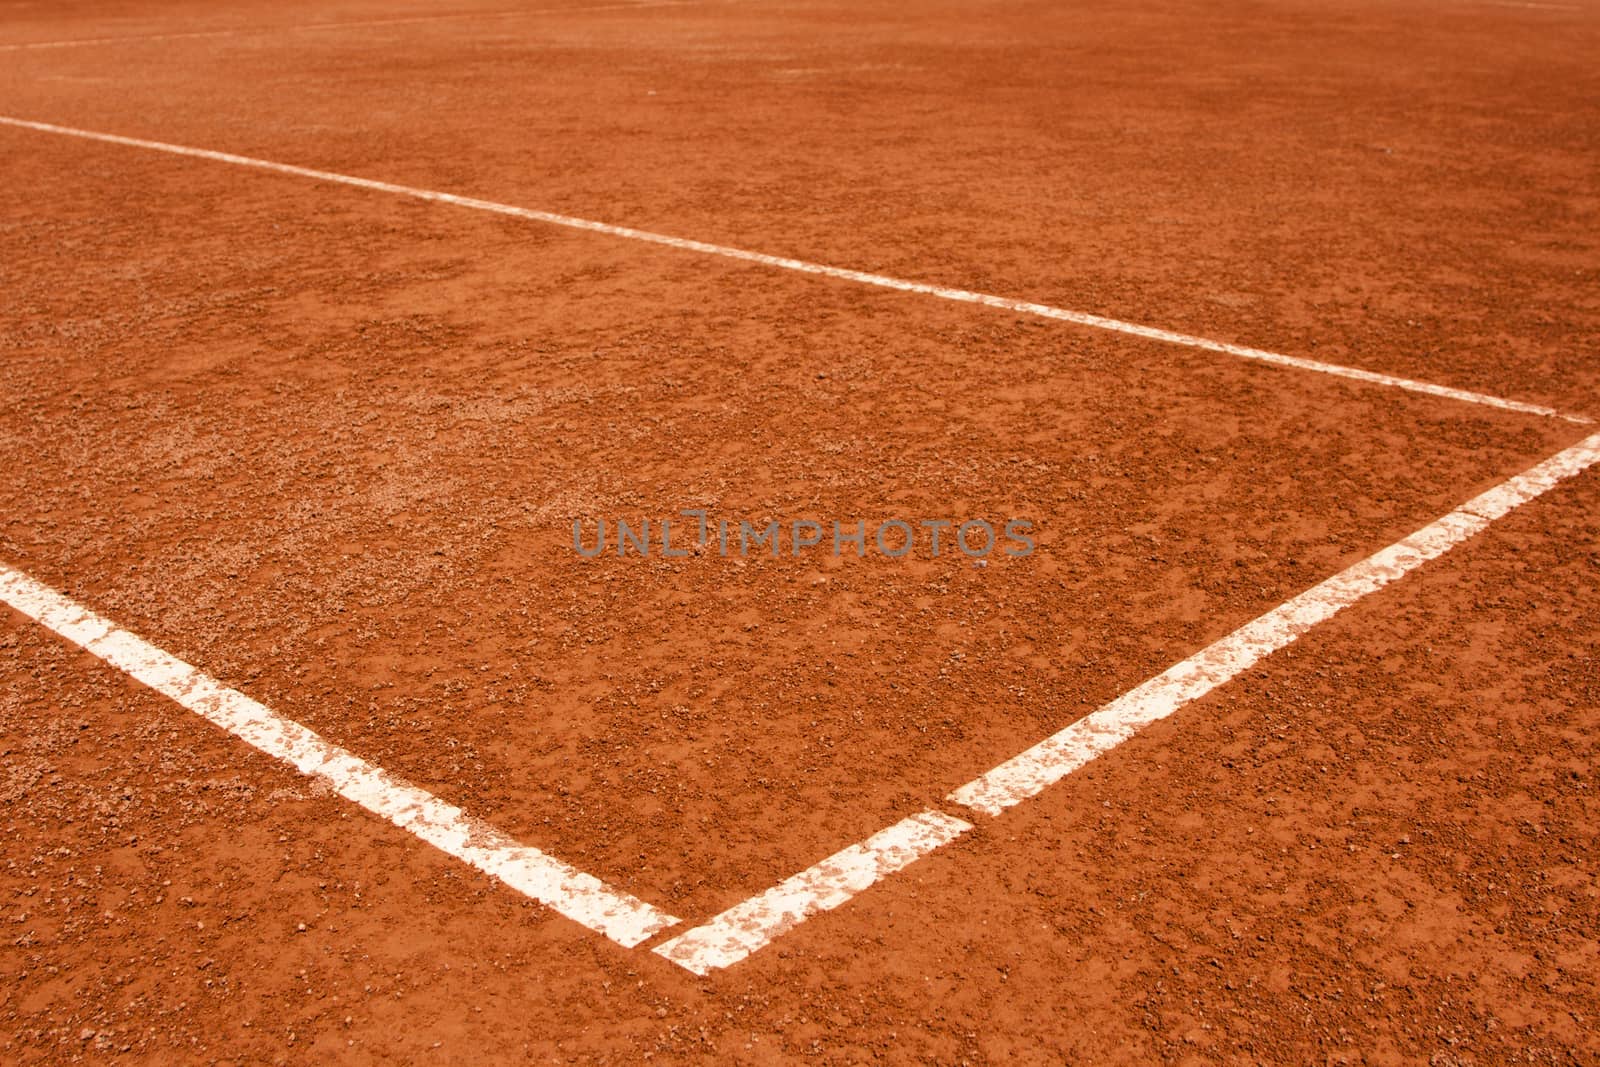 Tennis court lines by dazhetak